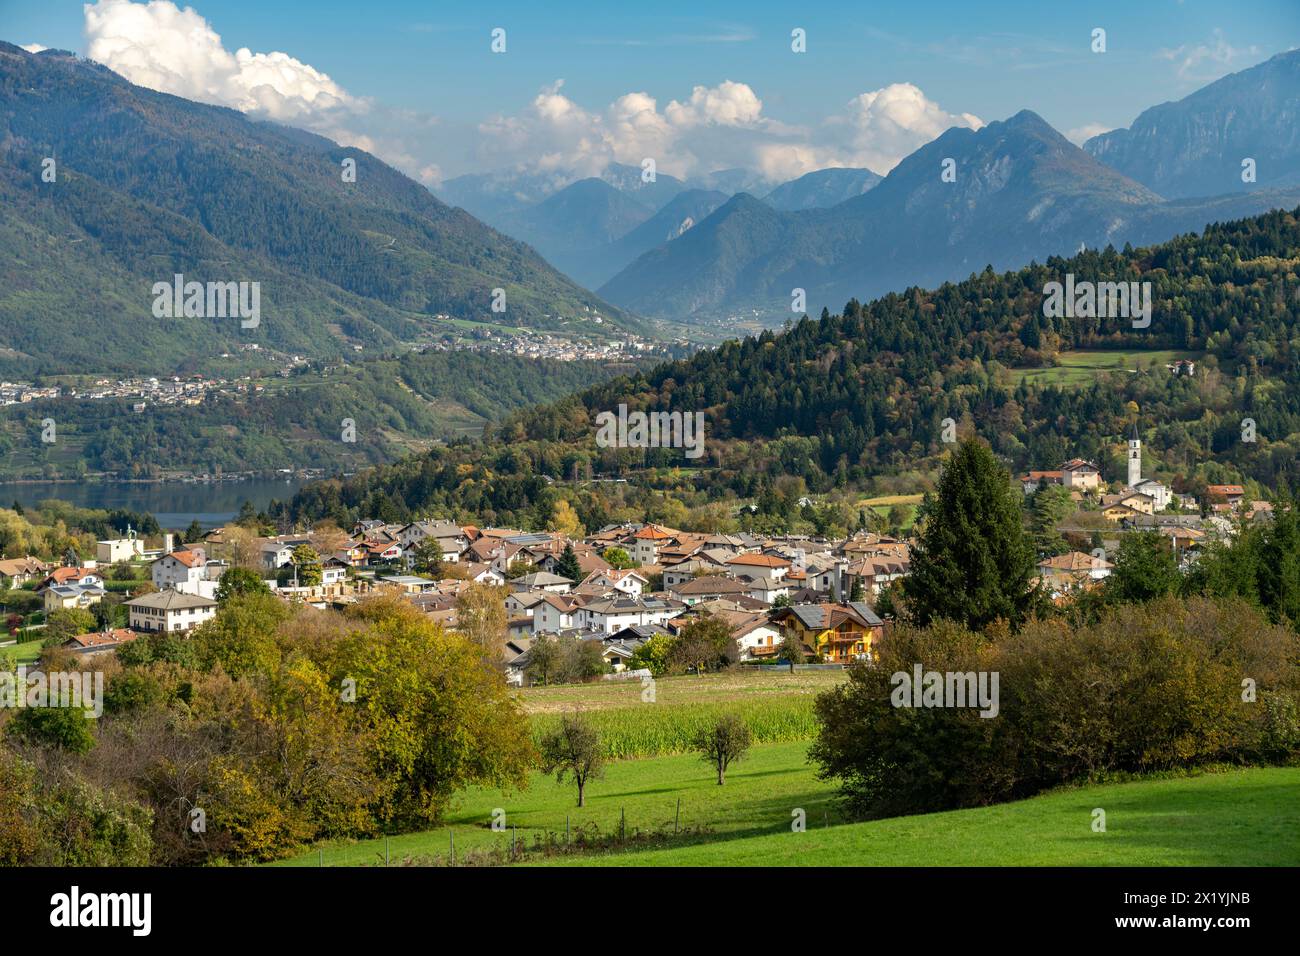 Vattaro, Lake Caldonazzo and the Valsugana landscape, Trentino, Italy, Europe Stock Photo